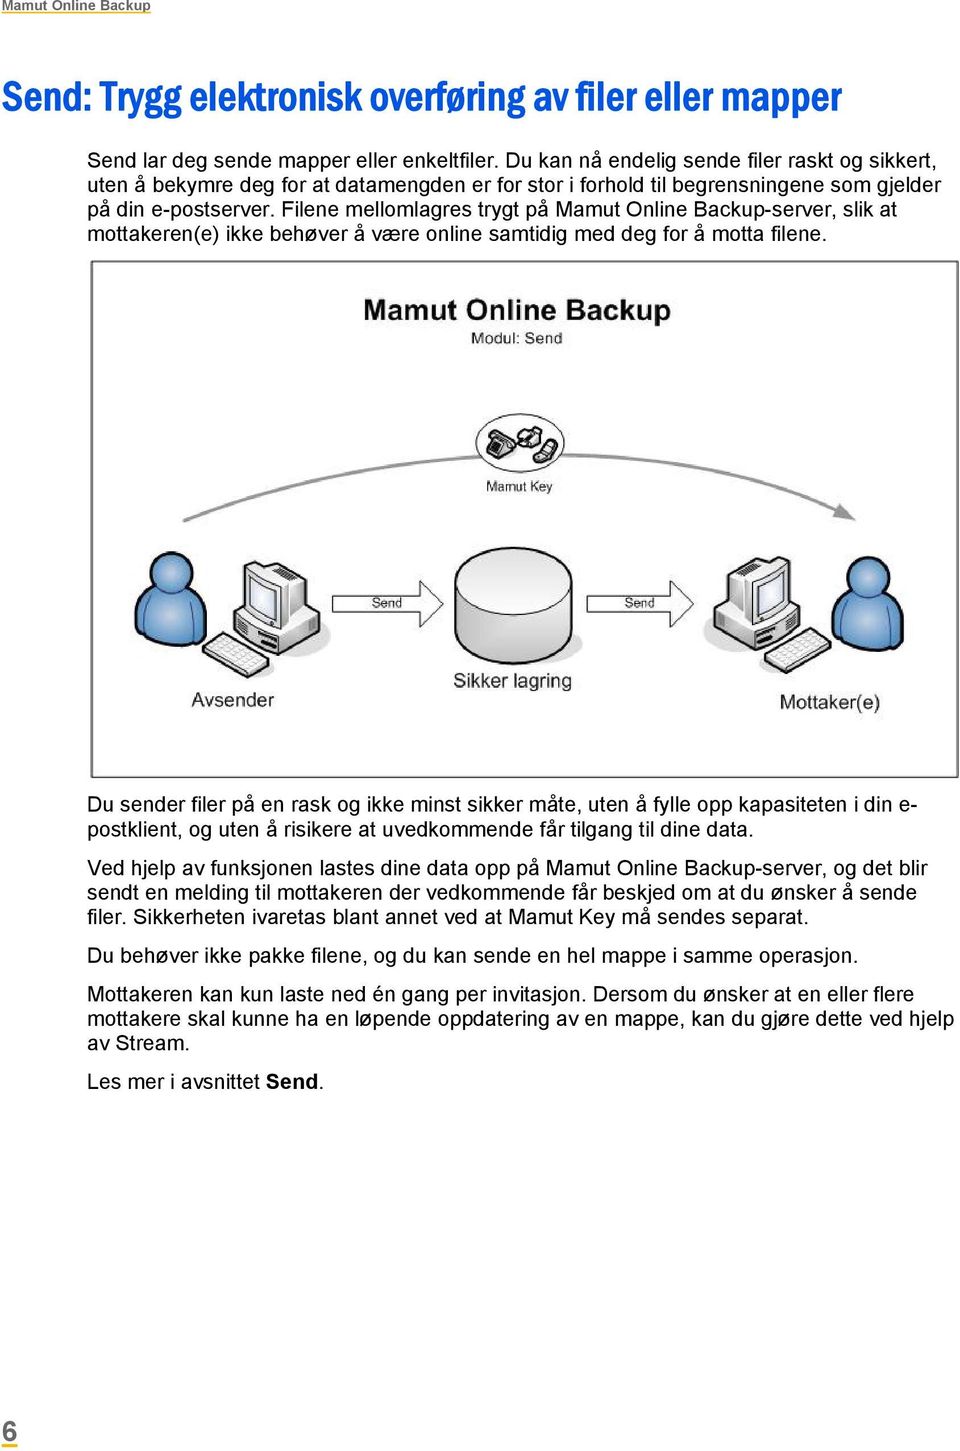 Filene mellomlagres trygt på Mamut Online Backup-server, slik at mottakeren(e) ikke behøver å være online samtidig med deg for å motta filene.